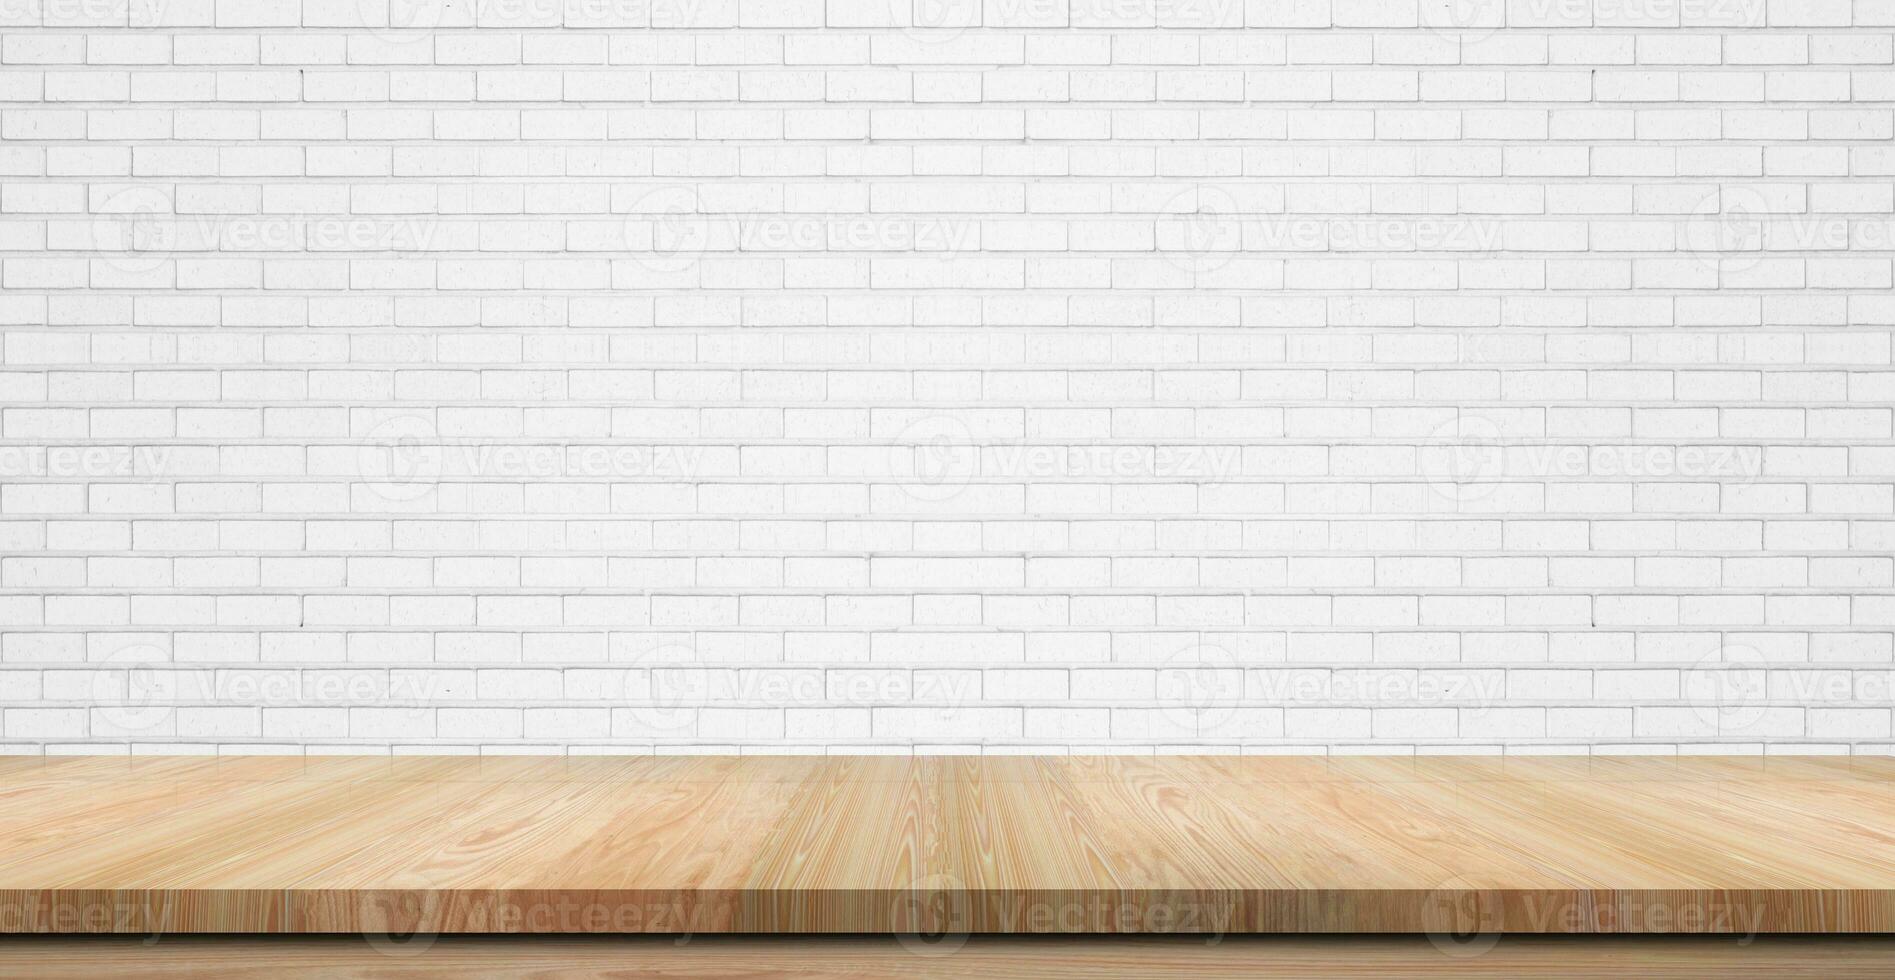 piano d'appoggio in legno vuoto, bancone o ripiano su sfondo bianco muro di mattoni, per banner di visualizzazione alimentare, sfondo. foto